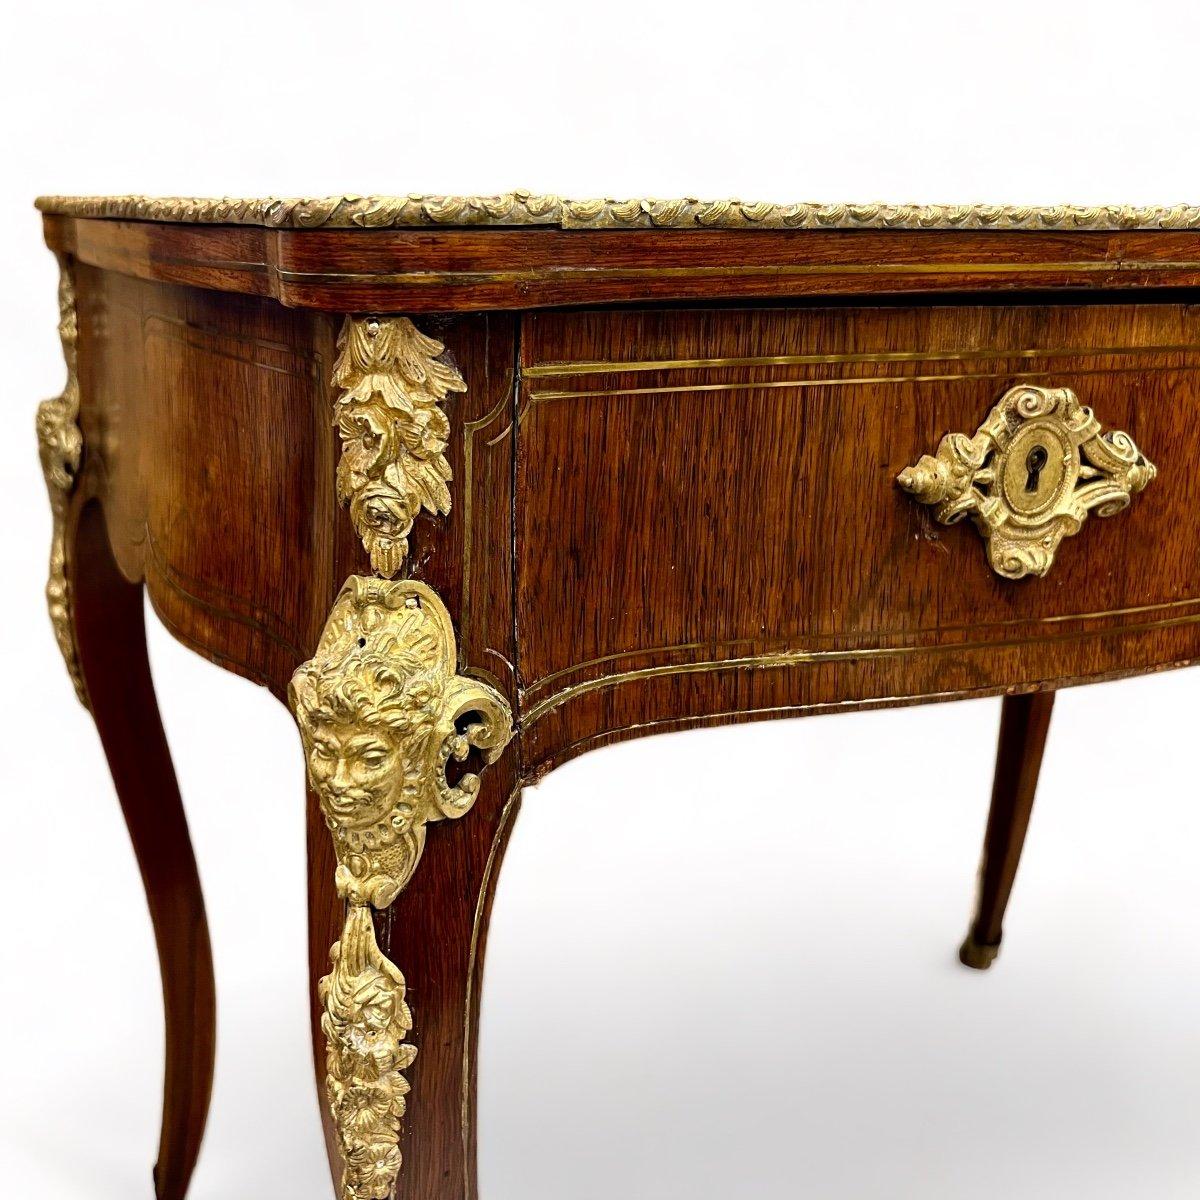 Ce petit bureau du XIXe siècle est réalisé en bois de rose avec des filets de laiton insérés. Il présente un mélange transitoire d'éléments représentatifs des styles Louis XV et Louis XVI, notamment dans ses pieds courbés. Les pieds et le tablier du